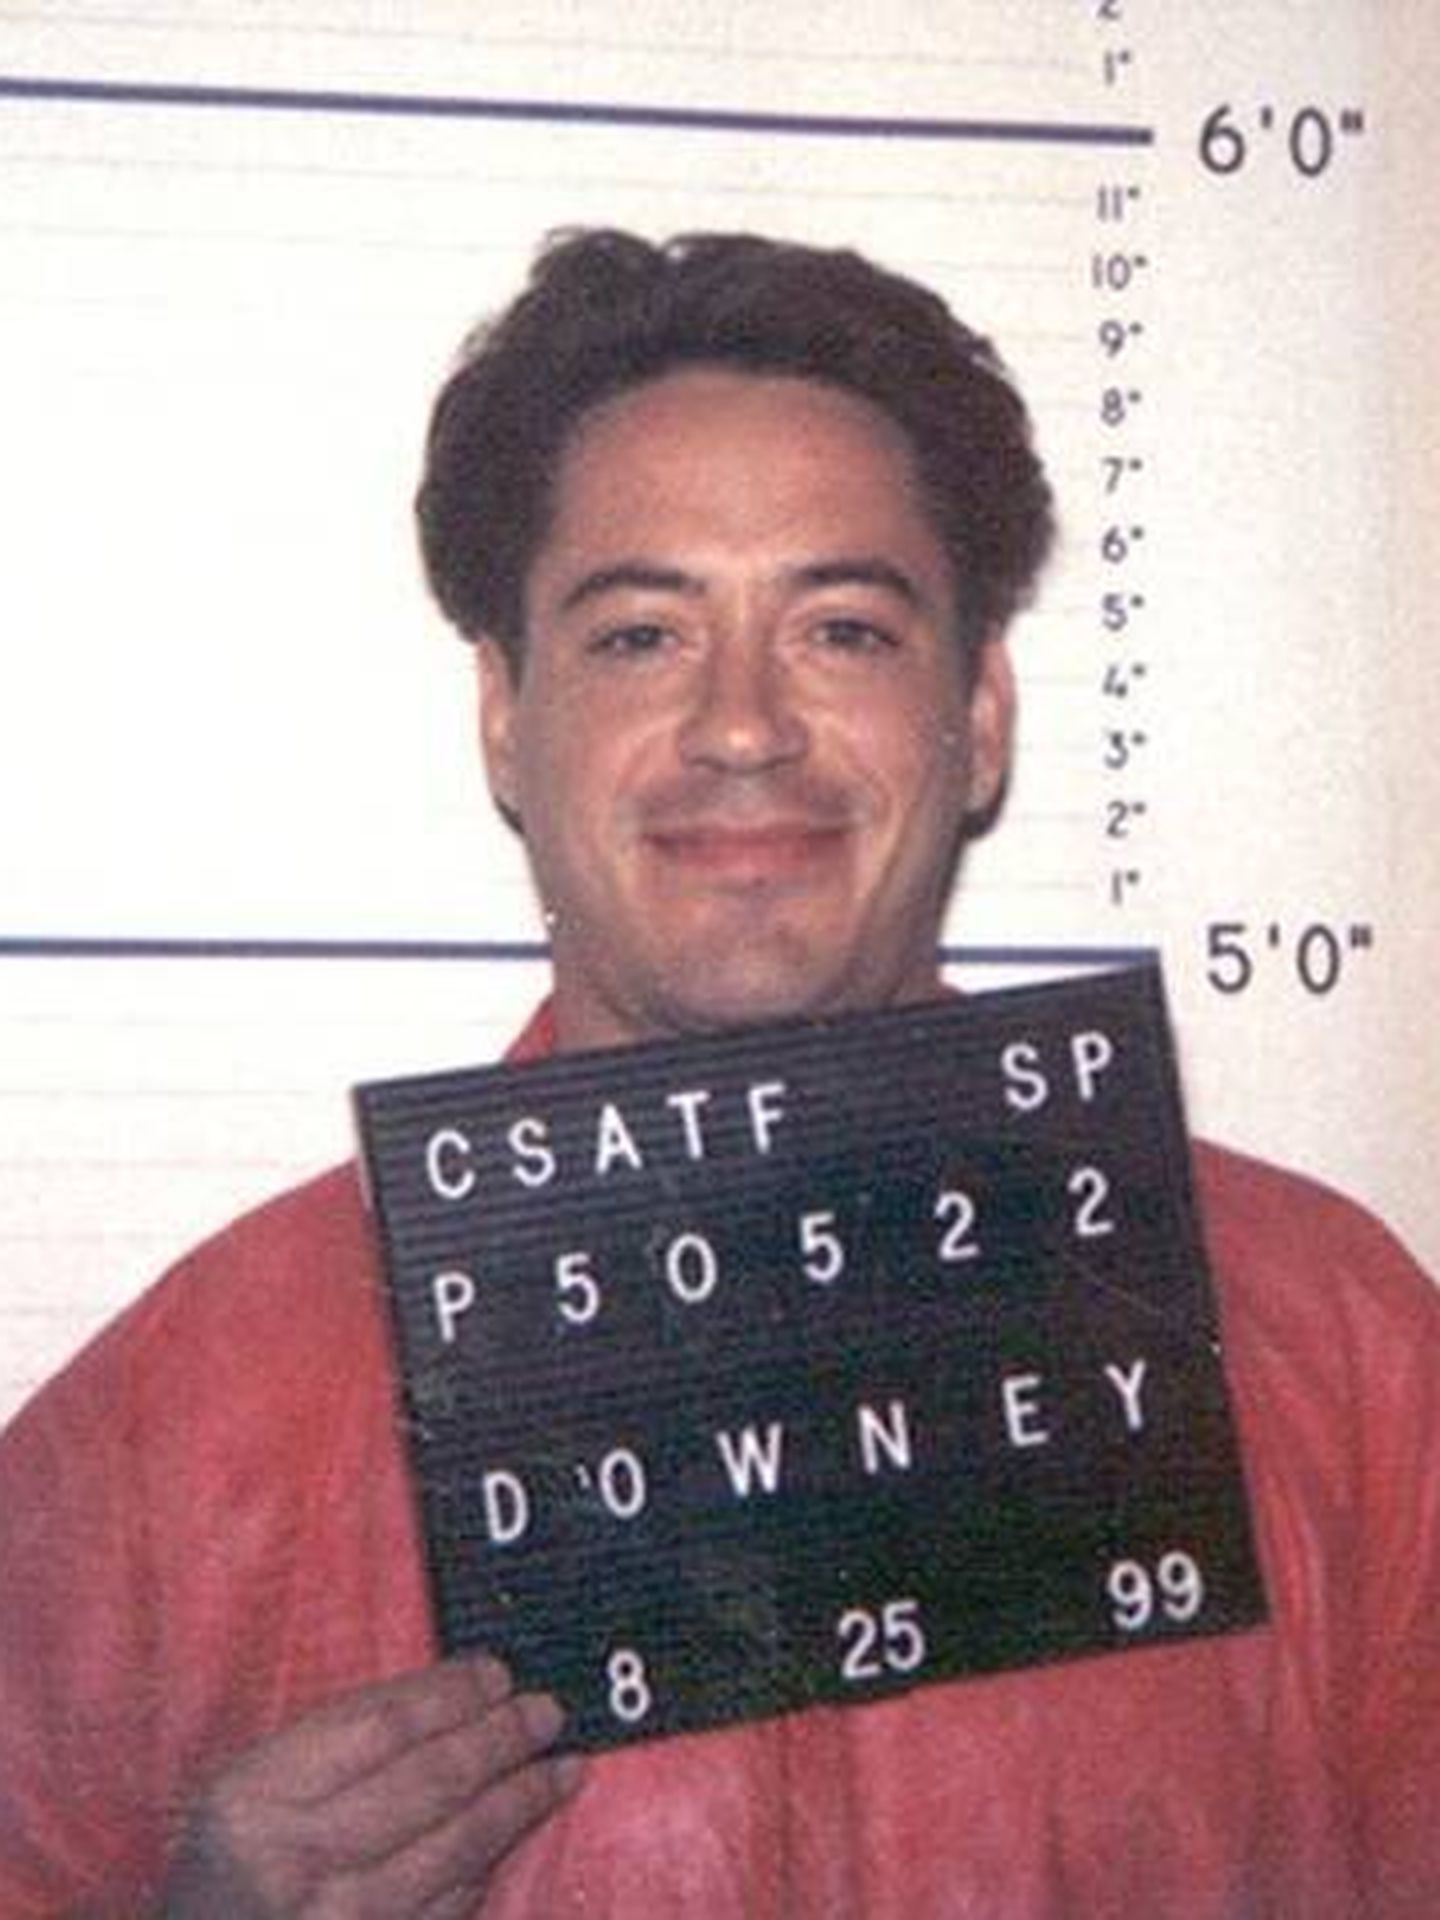 Imagen de la detención de Robert Downey Jr en 1999 (CC)